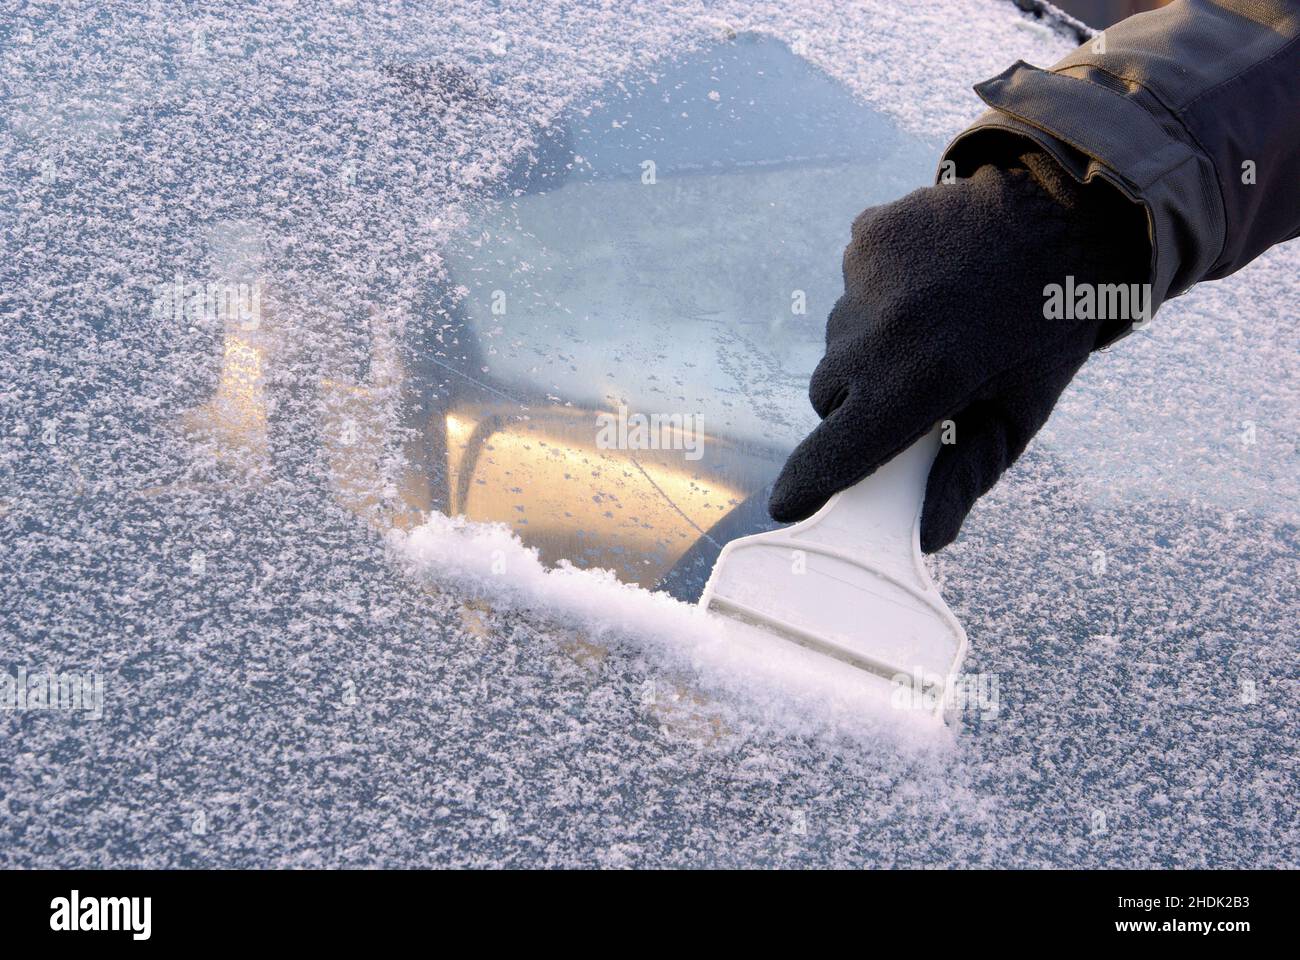 574 Ice Scraper Bilder und Fotos - Getty Images